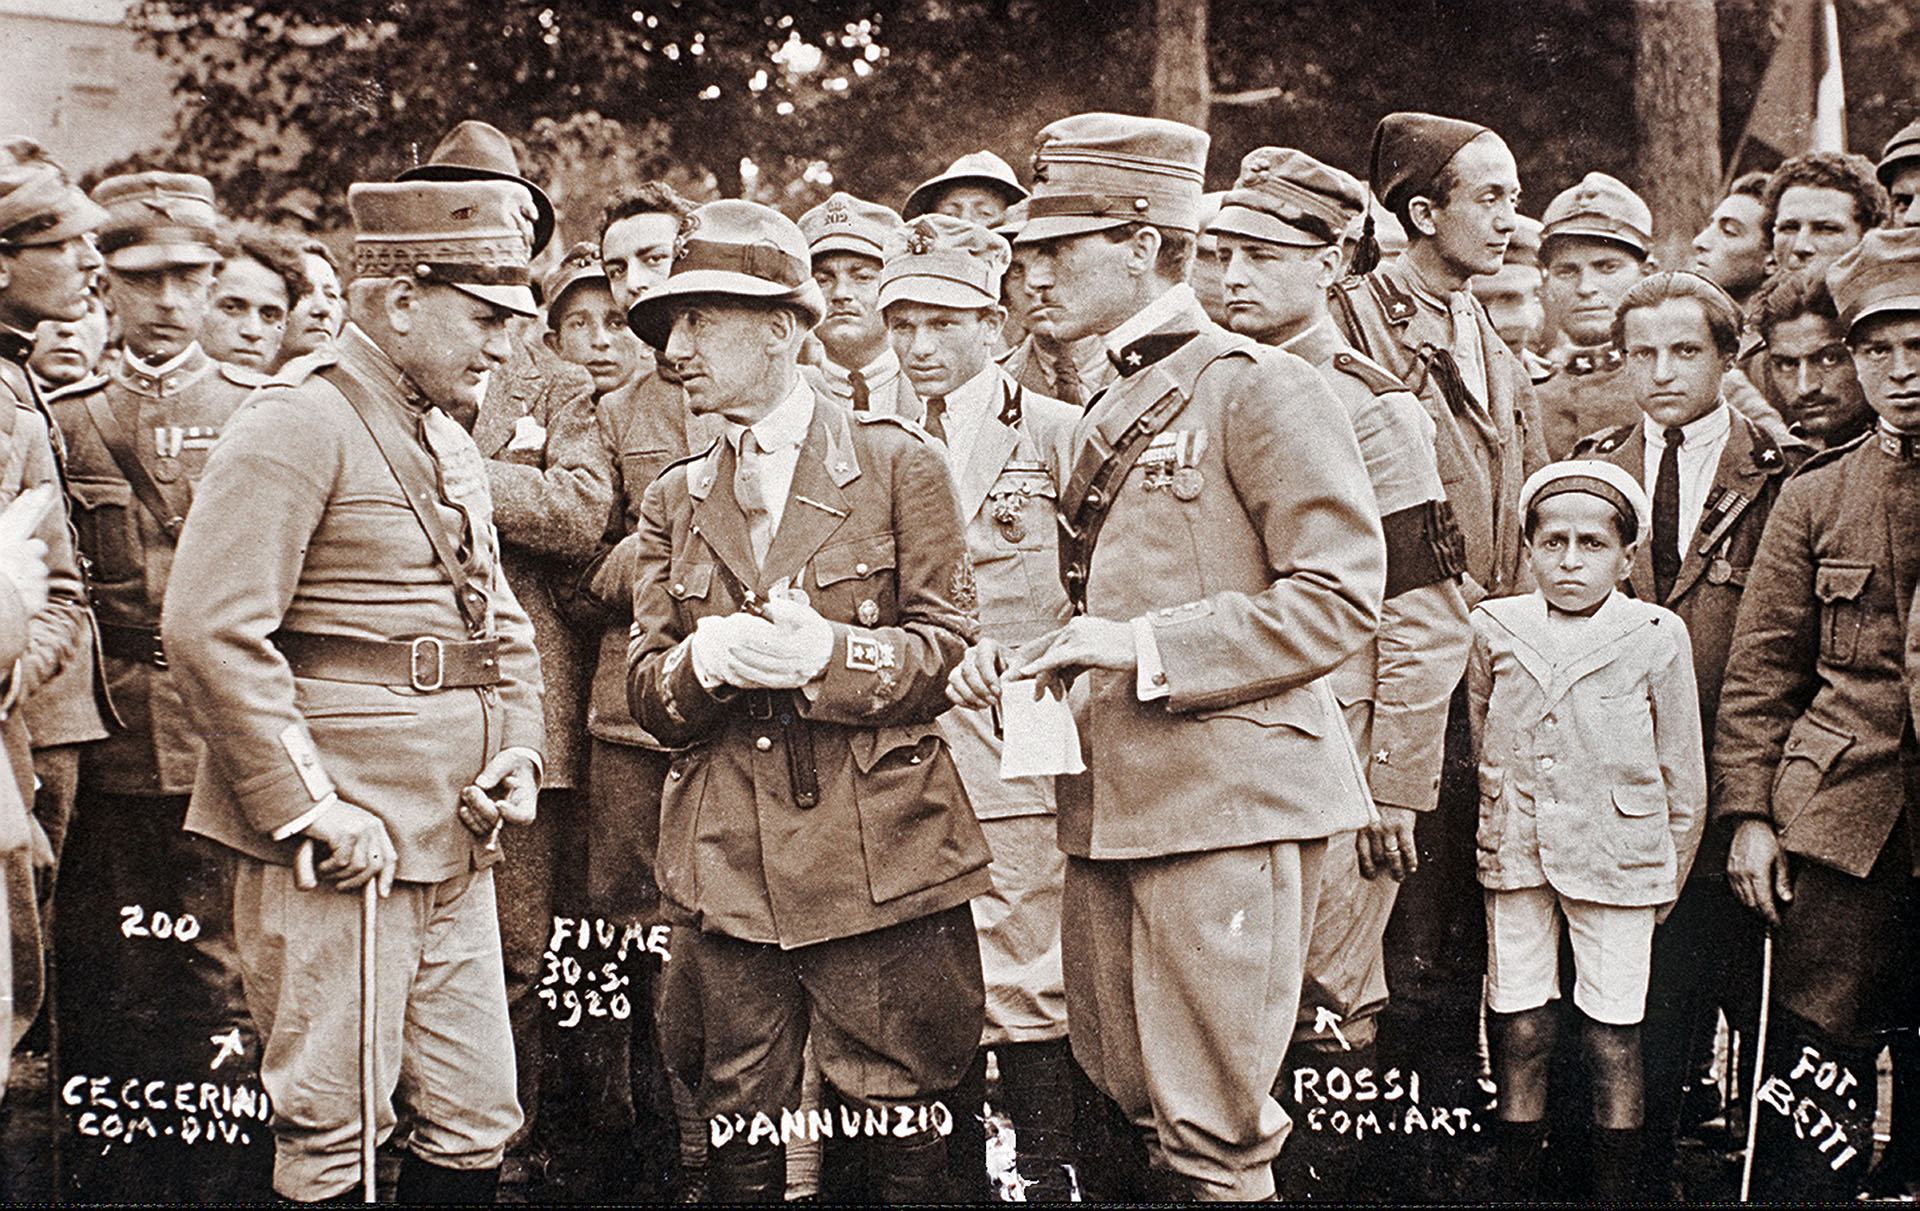 Gabriele D'Annunzio entre el comandante Ceccerini y el comandante Rossi en Fiume, ocho meses después de la anexión a Italia por iniciativa de la legión nacionalista de D'Annunzio, 30 de mayo de 1920 ( Fototeca Gilardi / Getty Images)